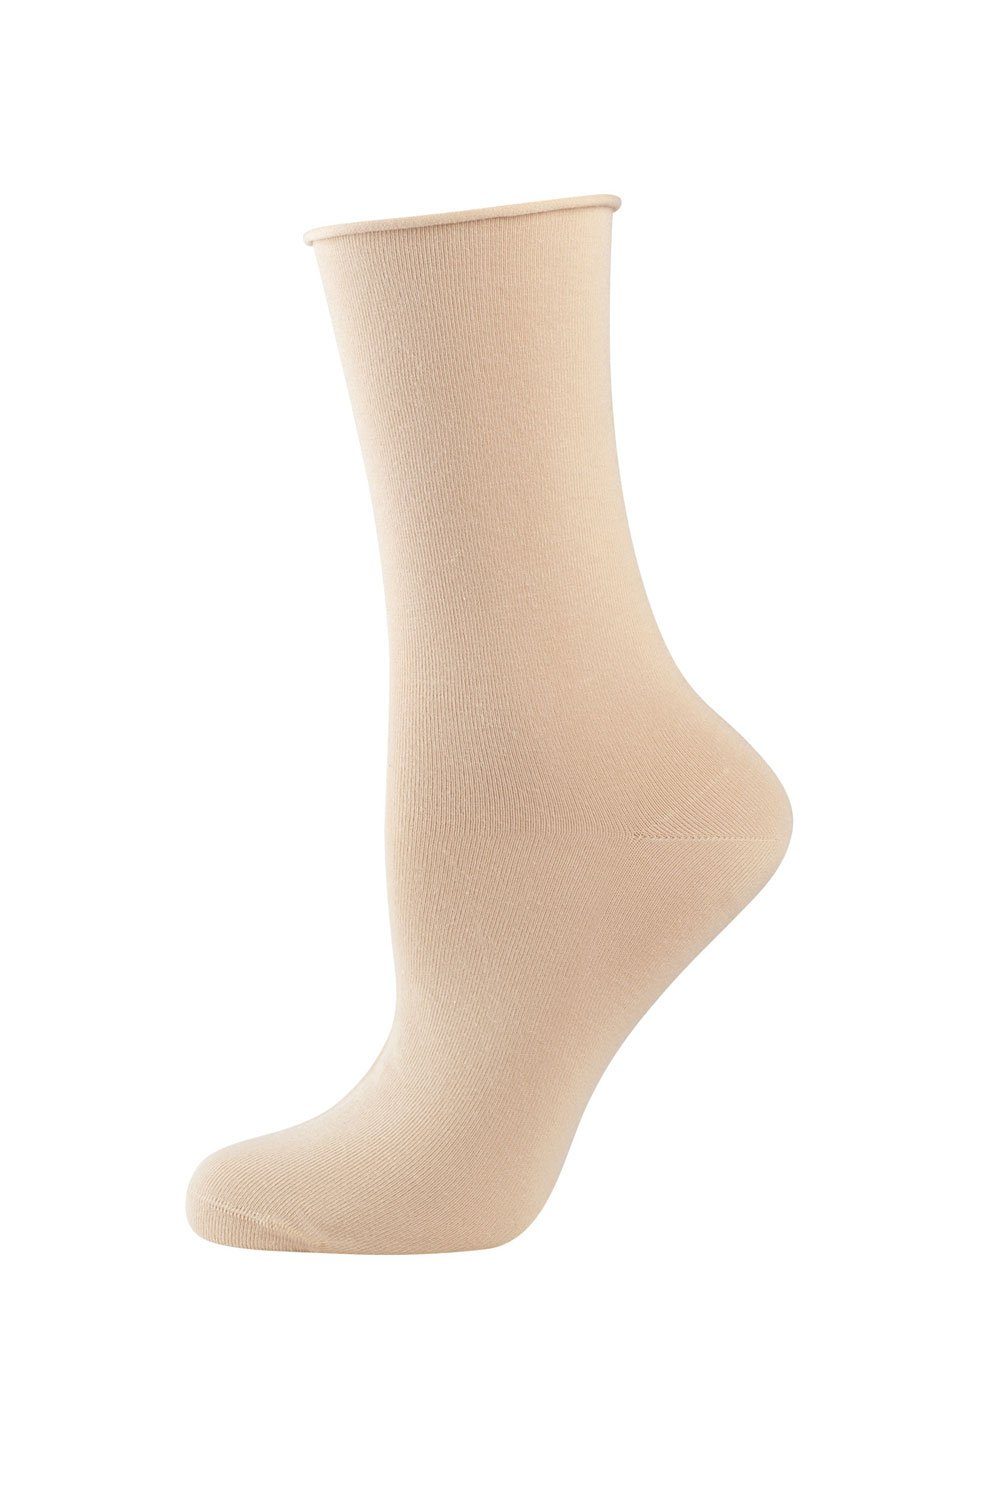 Elbeo Socken Light Cotton Rollbund-Socken 938303 creme